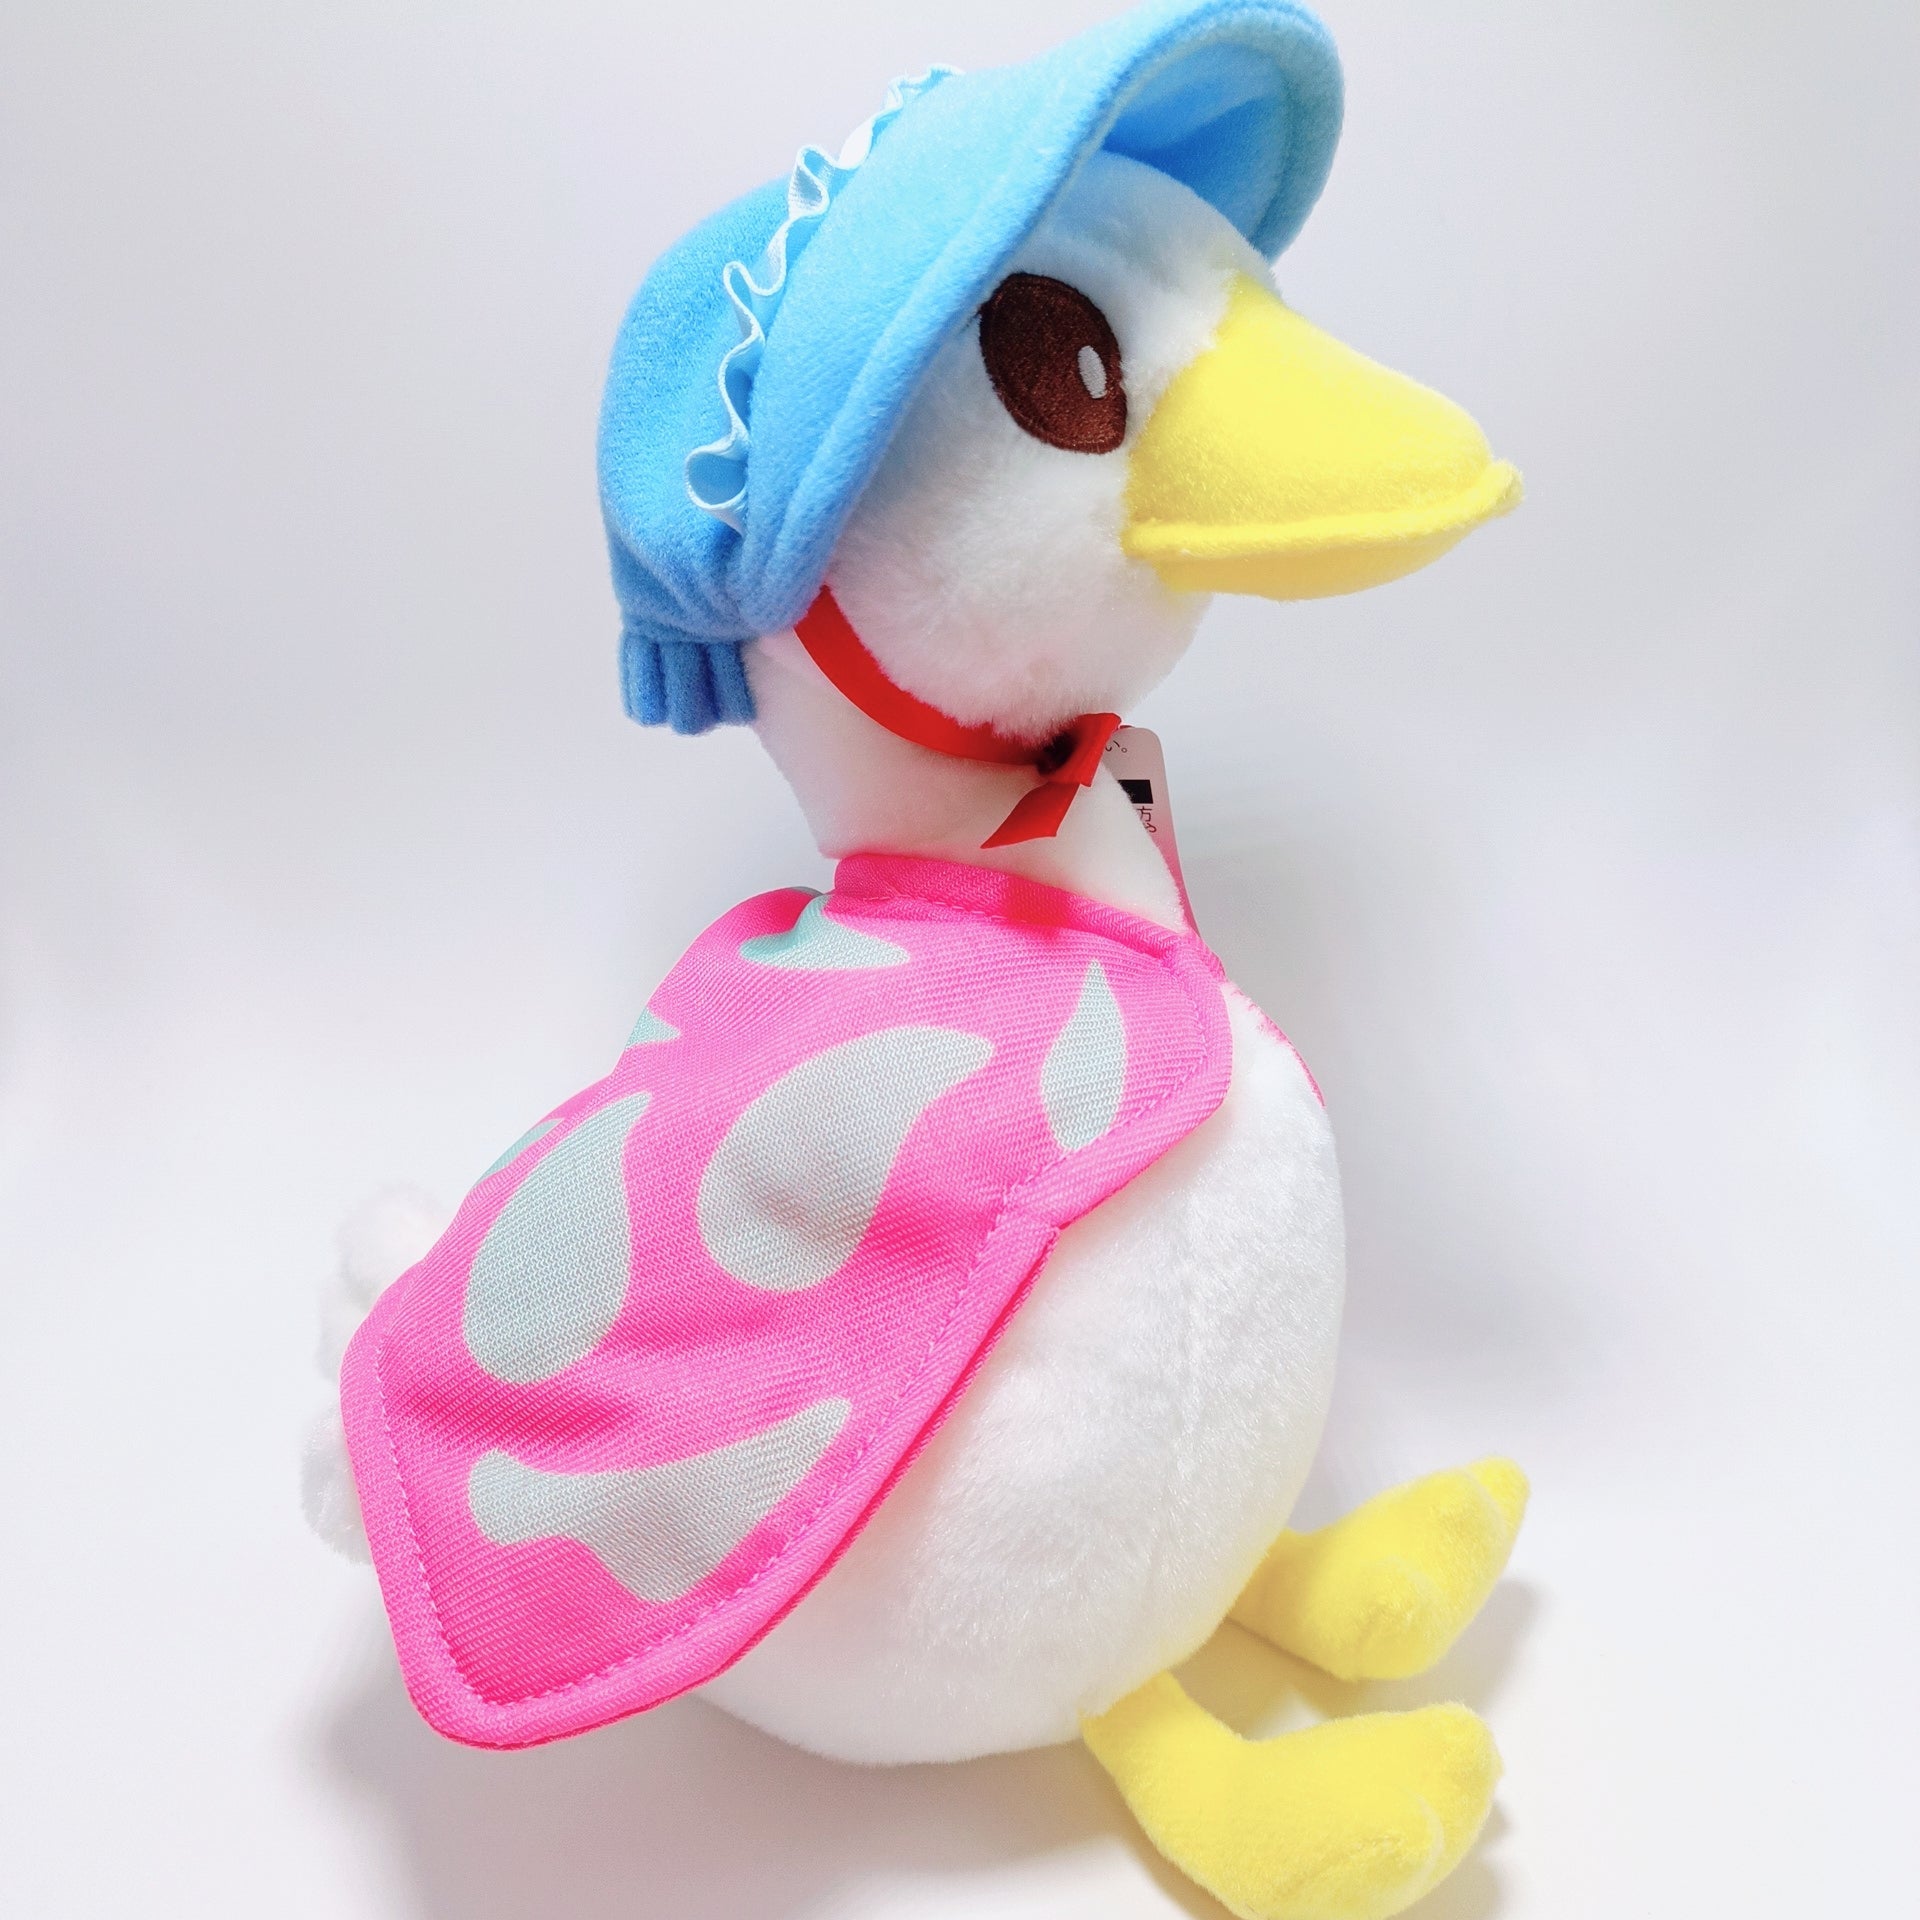 Peter Rabbit Jemima Puddle Duck Plushie – Rainbowholic Shop